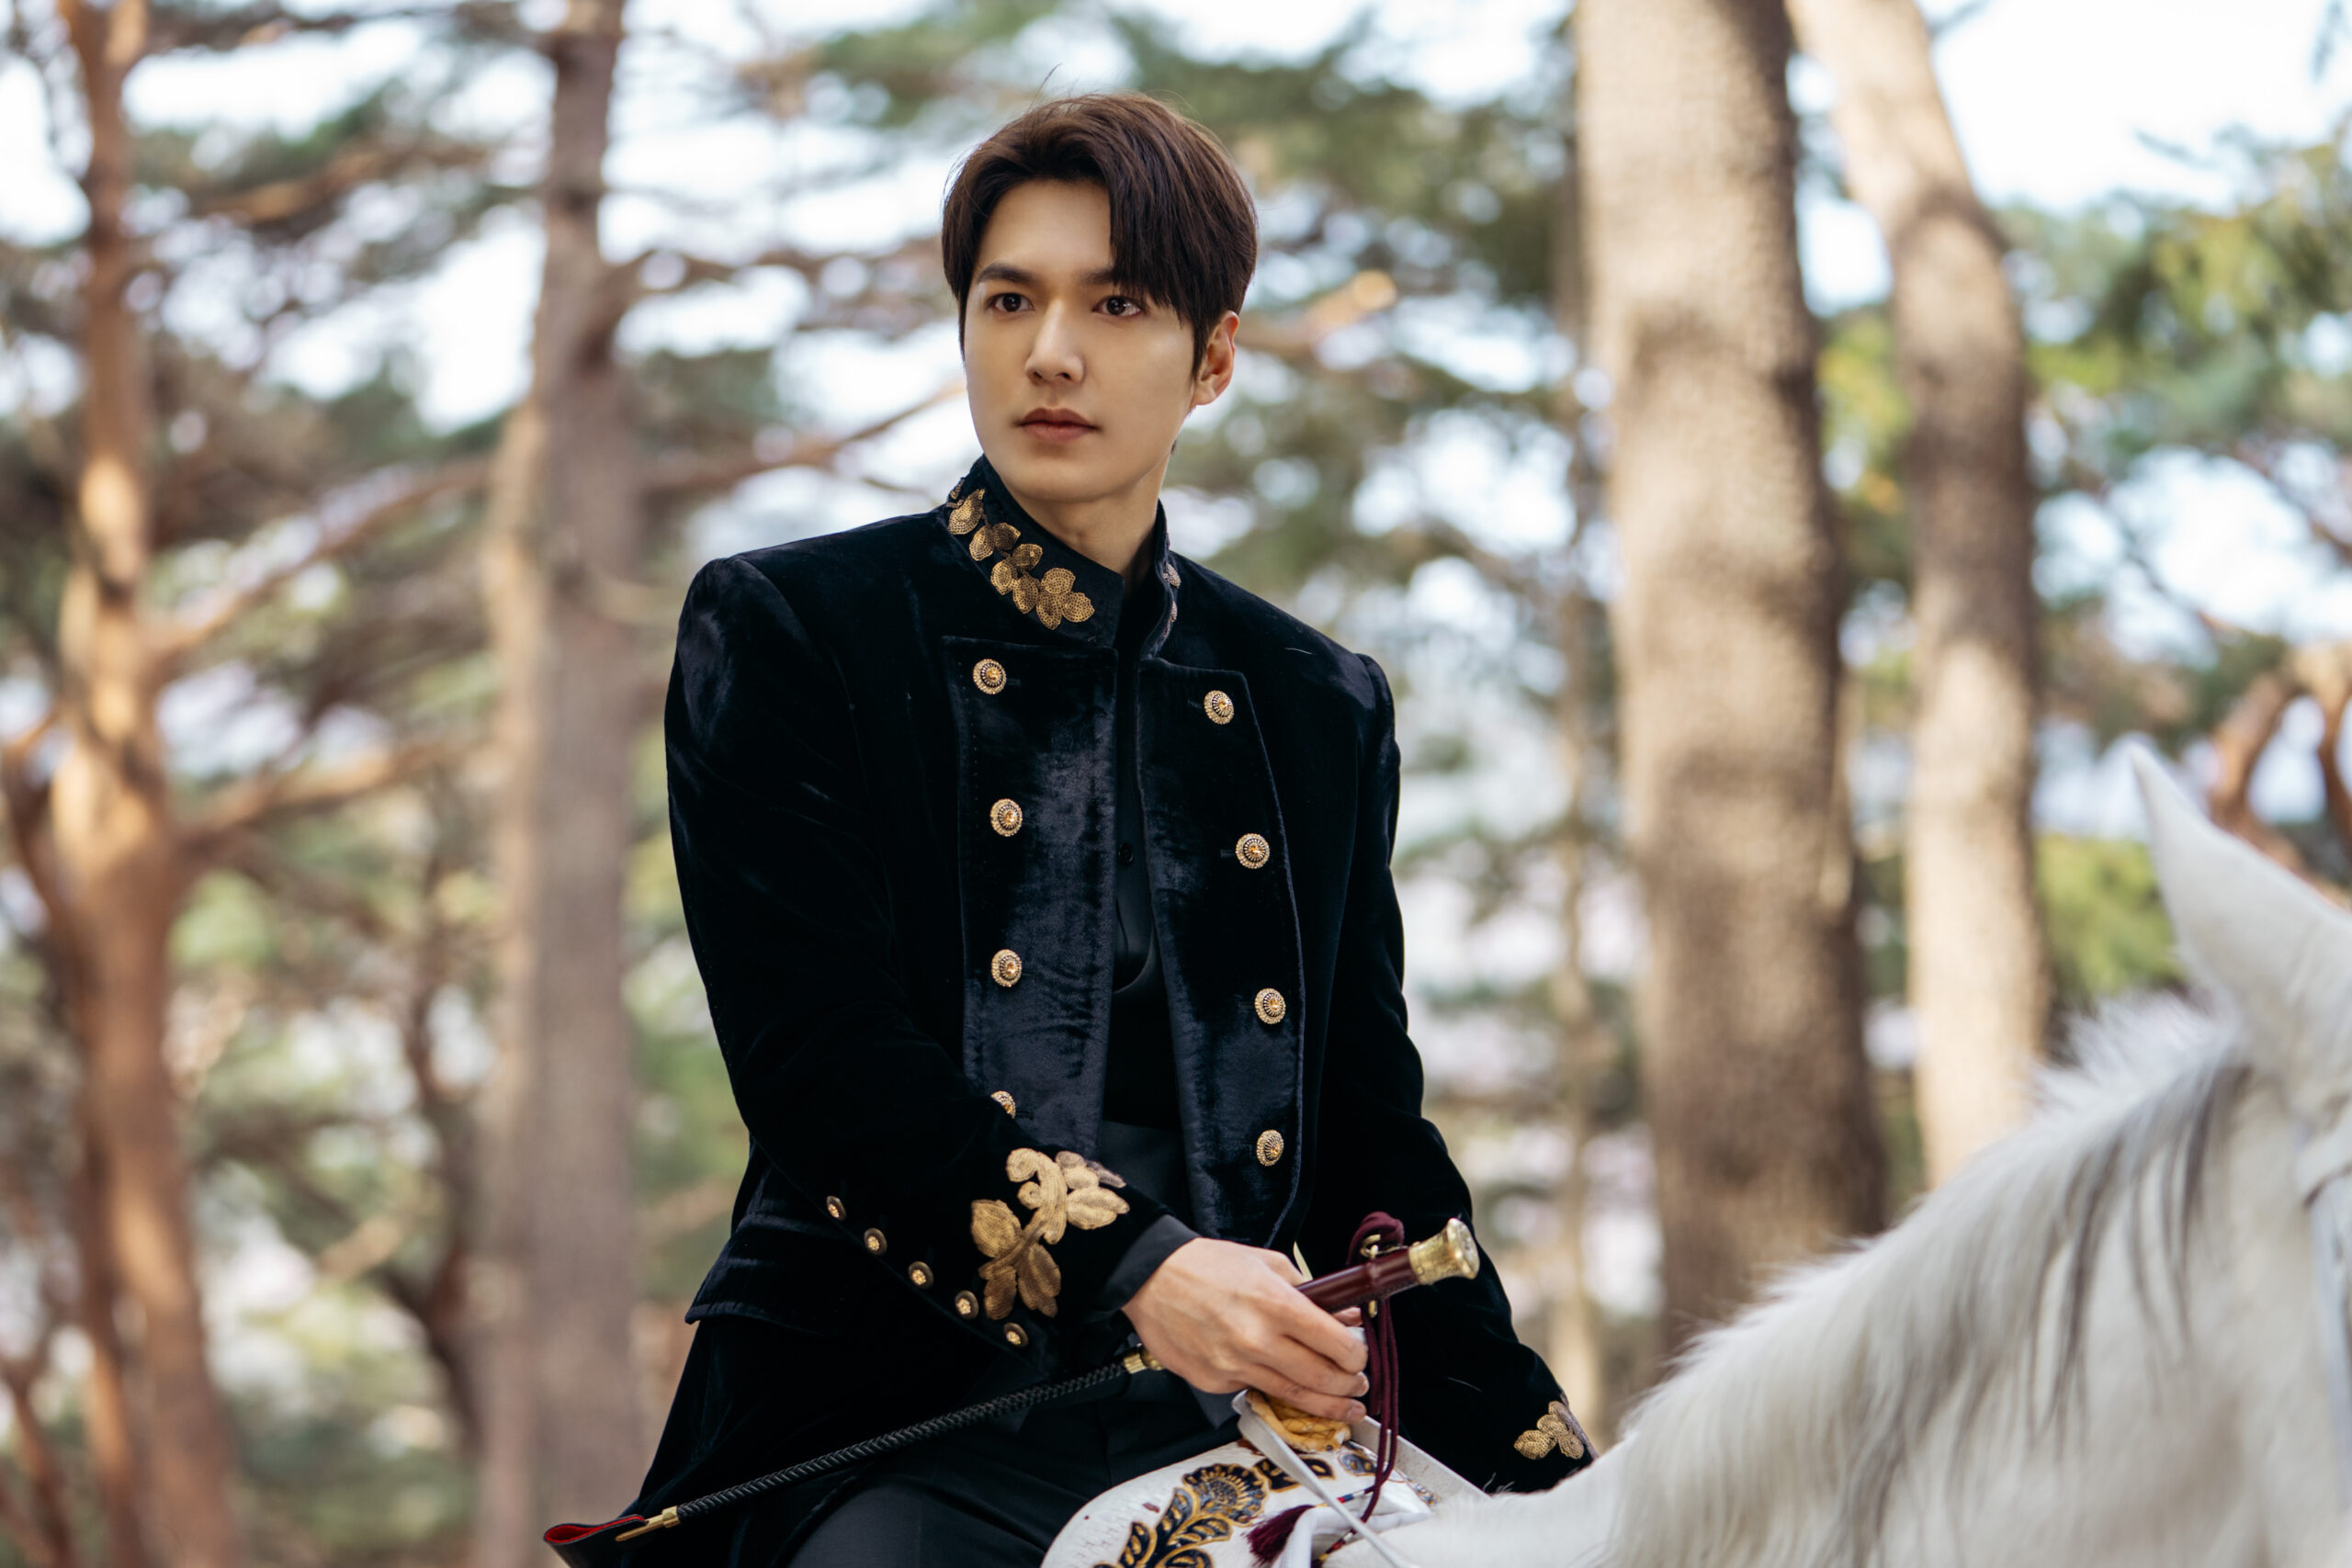 بهترین سریال های کره ای 2020 ؛ پادشاه ابدی - The King: Eternal Monarch